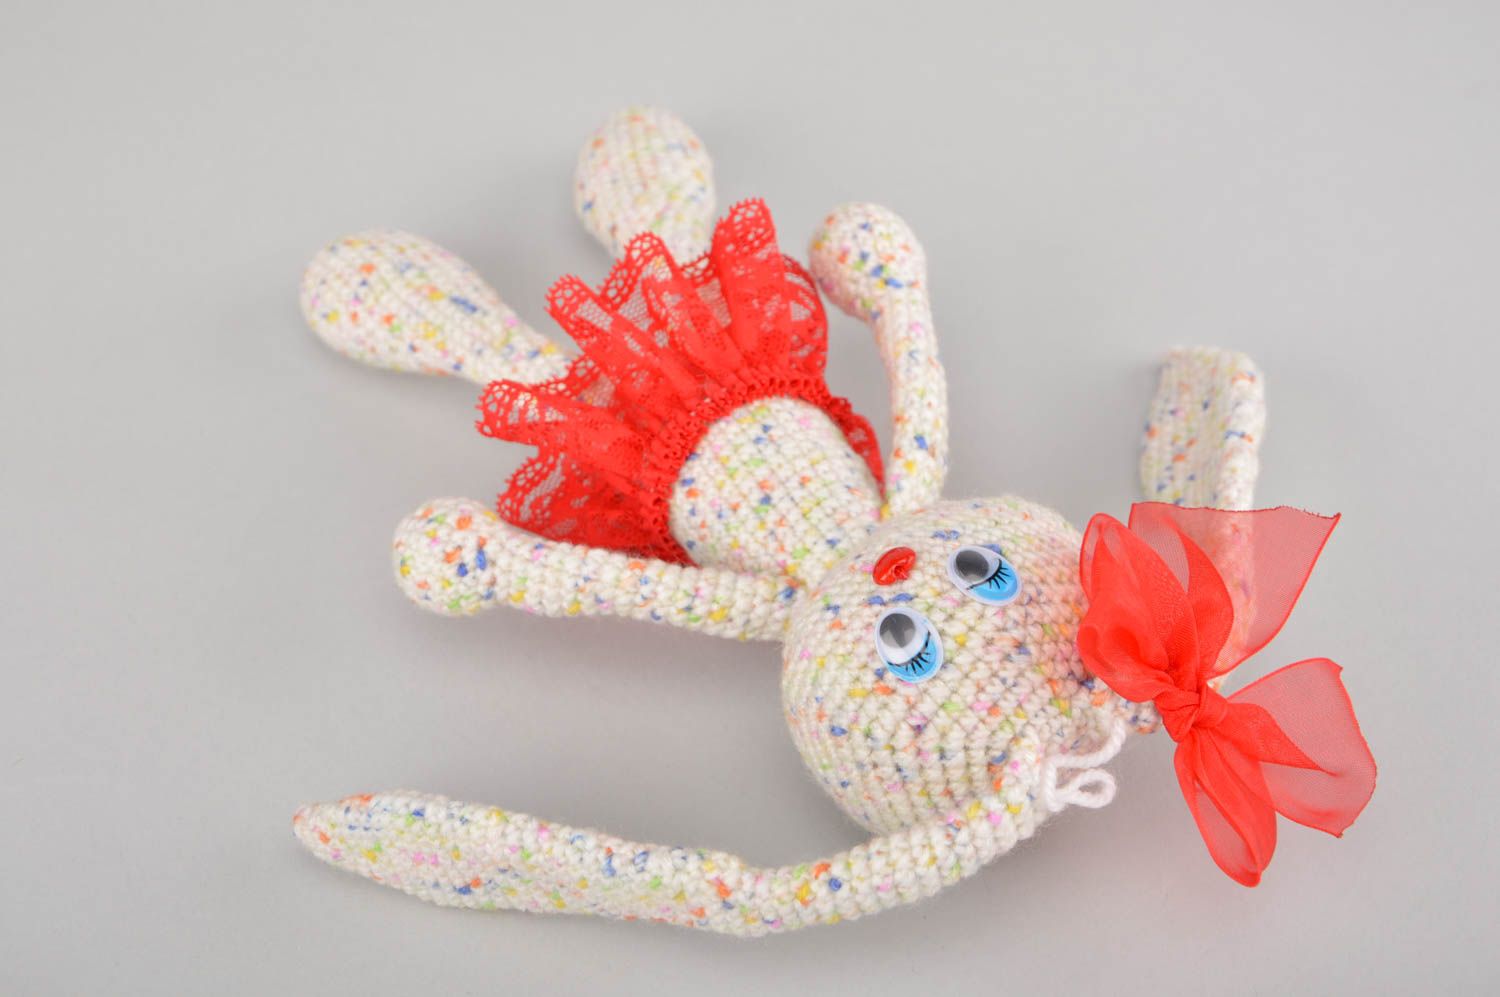 Conejito tejido al crohet hecho a mano juguetes artesanales peluches para niños foto 4